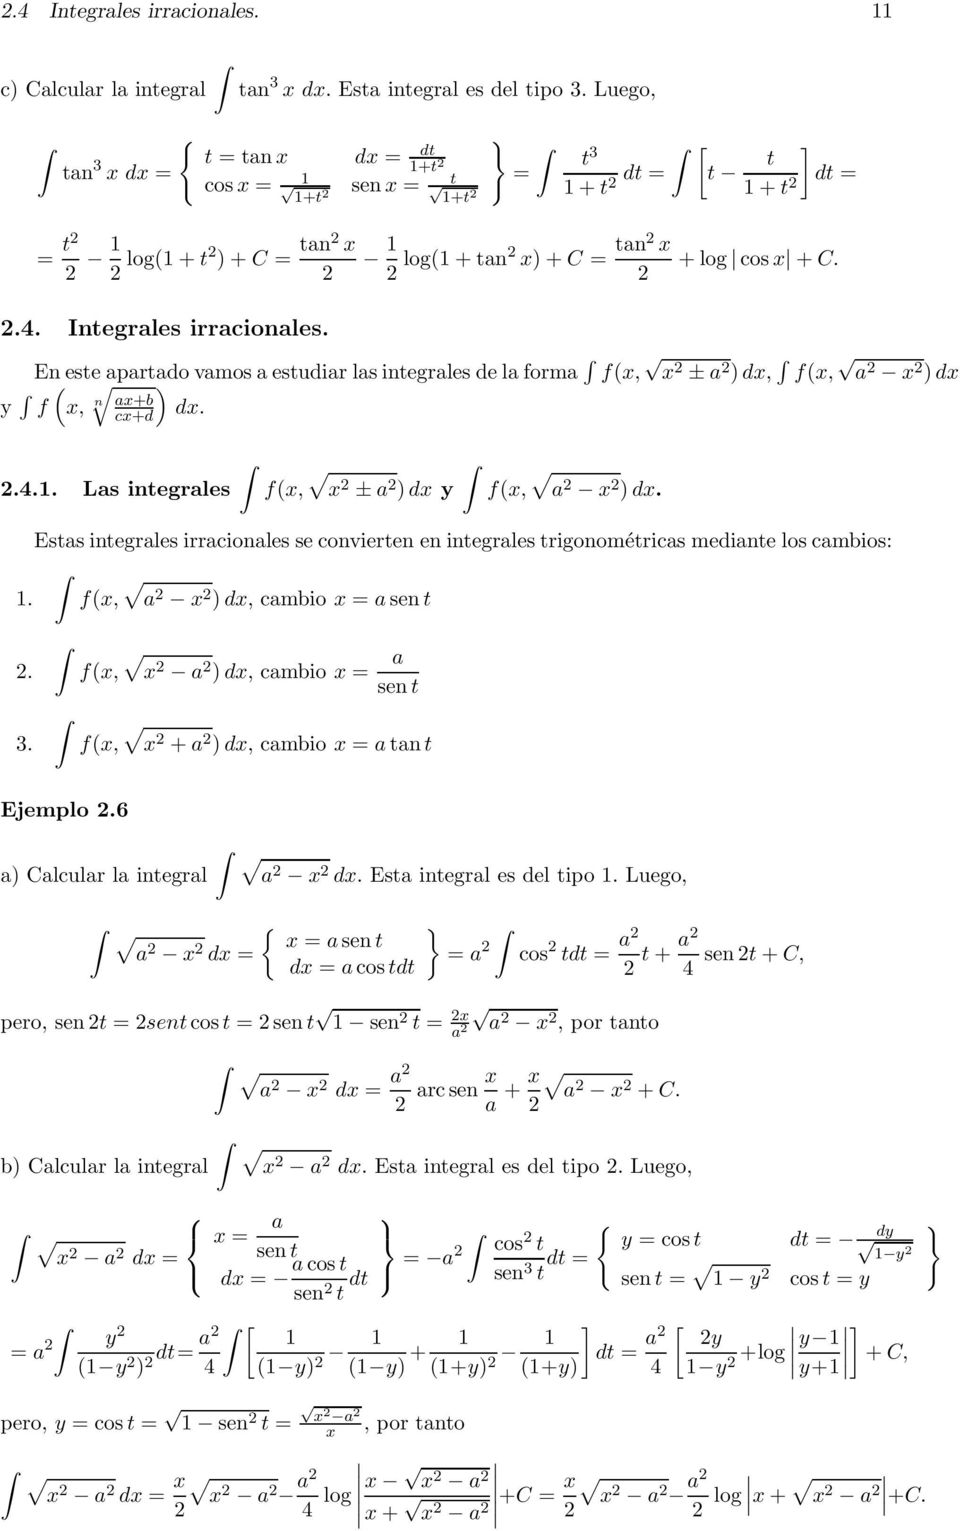 Ests integrles irrcionles se convierten en integrles trigonométrics medinte los cmbios:. f(, ) d, cmbio sen t. 3. f(, ) d, cmbio sen t f(, + ) d, cmbio tn t Ejemplo.6 ) Clculr l integrl d.